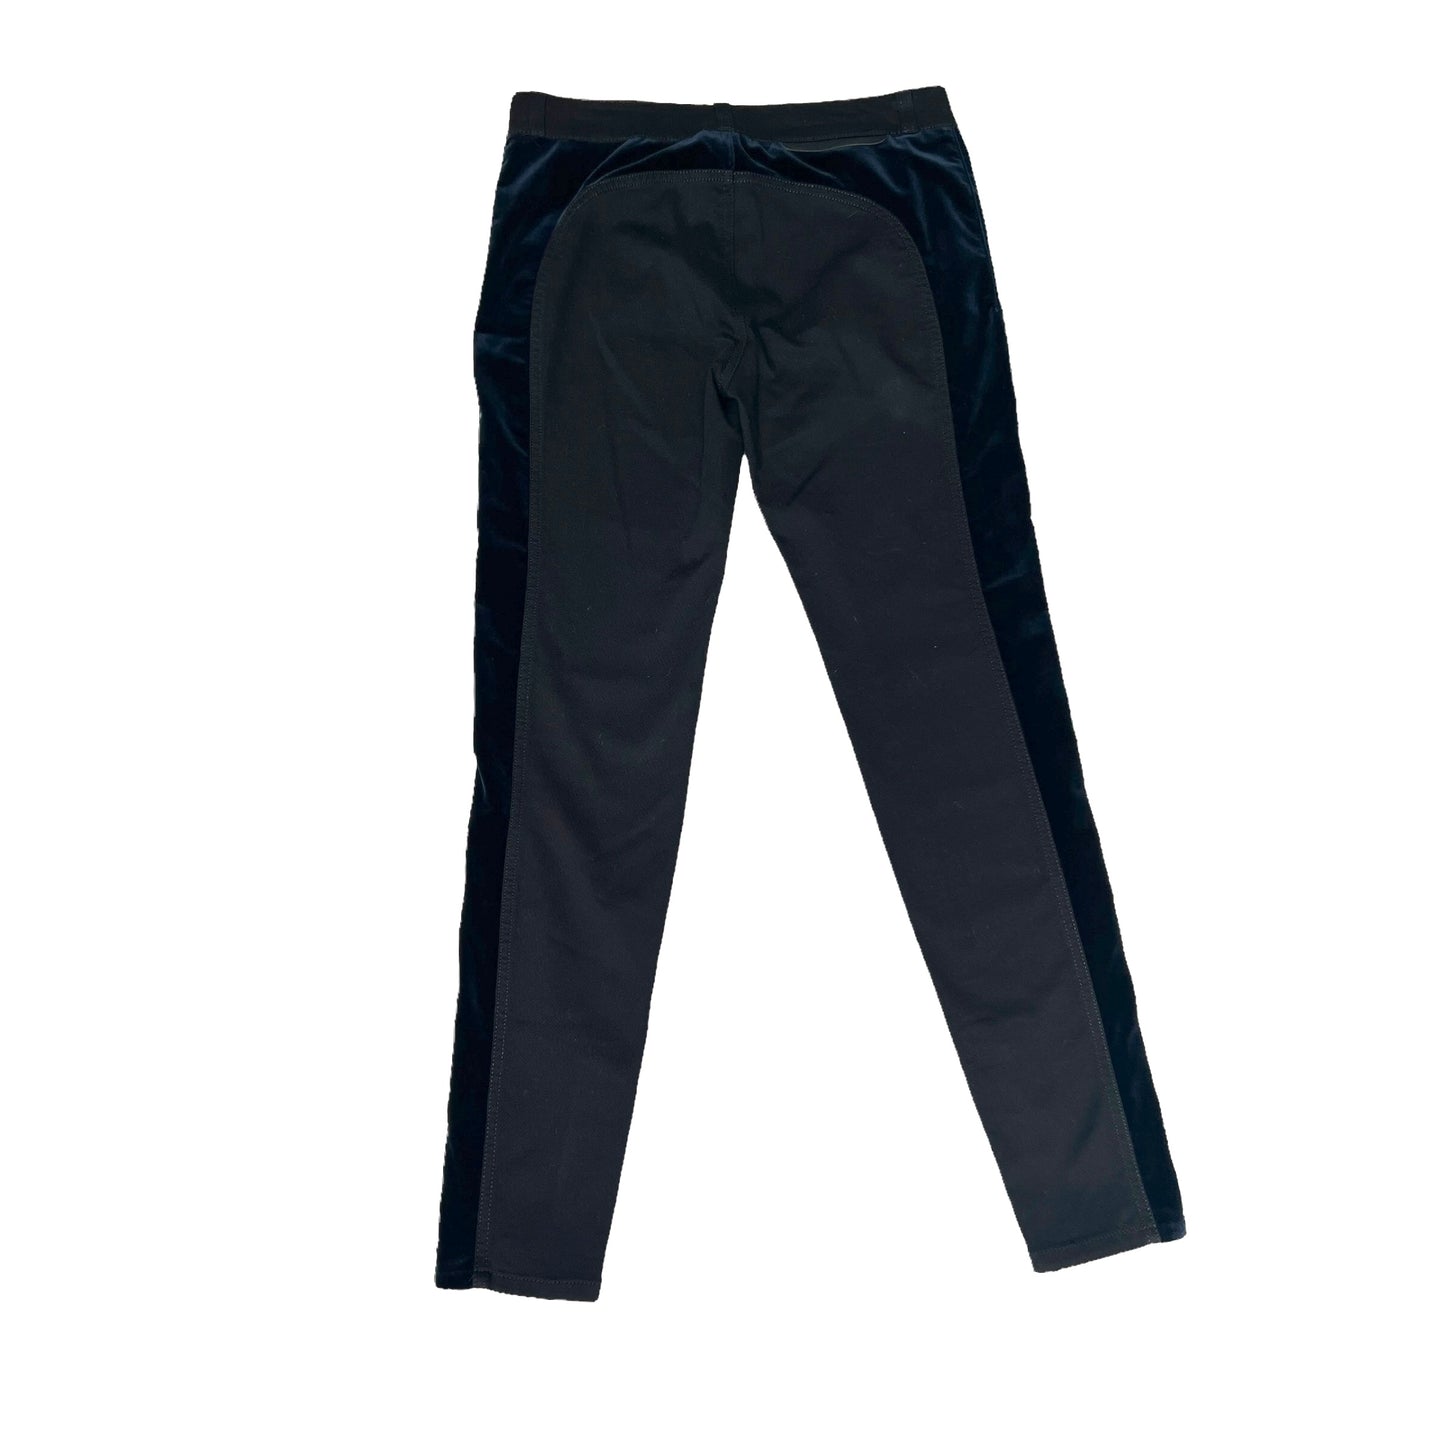 Black Pants with Blue Velvet - 27